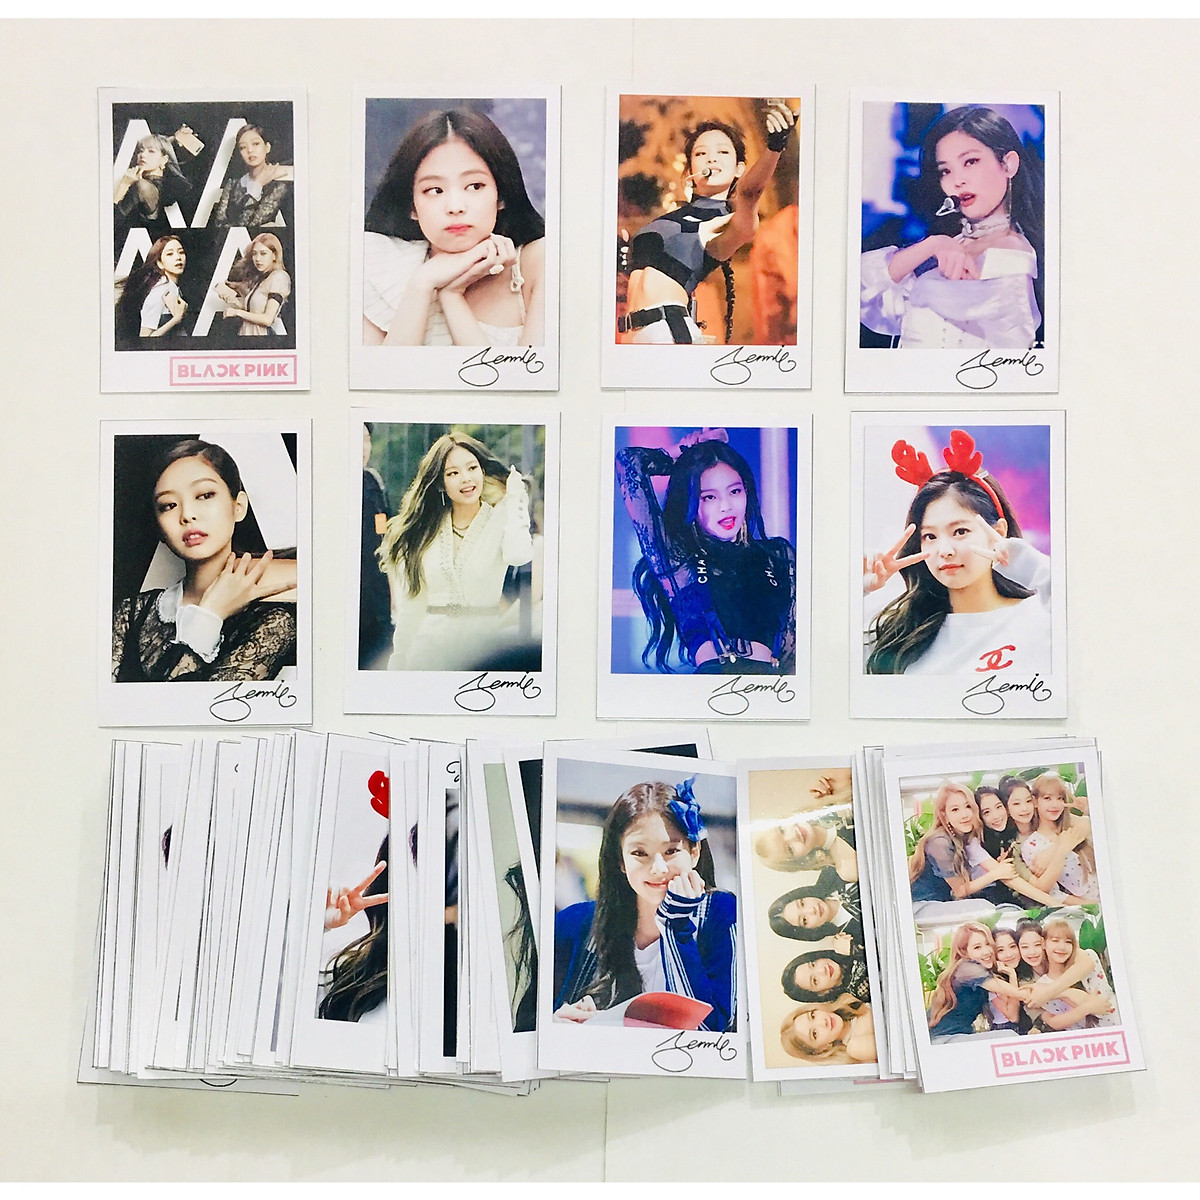 Ảnh card chữ ký Jennie với màu sắc tươi sáng và đầy sức sống chính là điểm nhấn cho những fan của Jennie. Hãy xem những bức ảnh này để cảm nhận vẻ đẹp quyến rũ của Jennie.